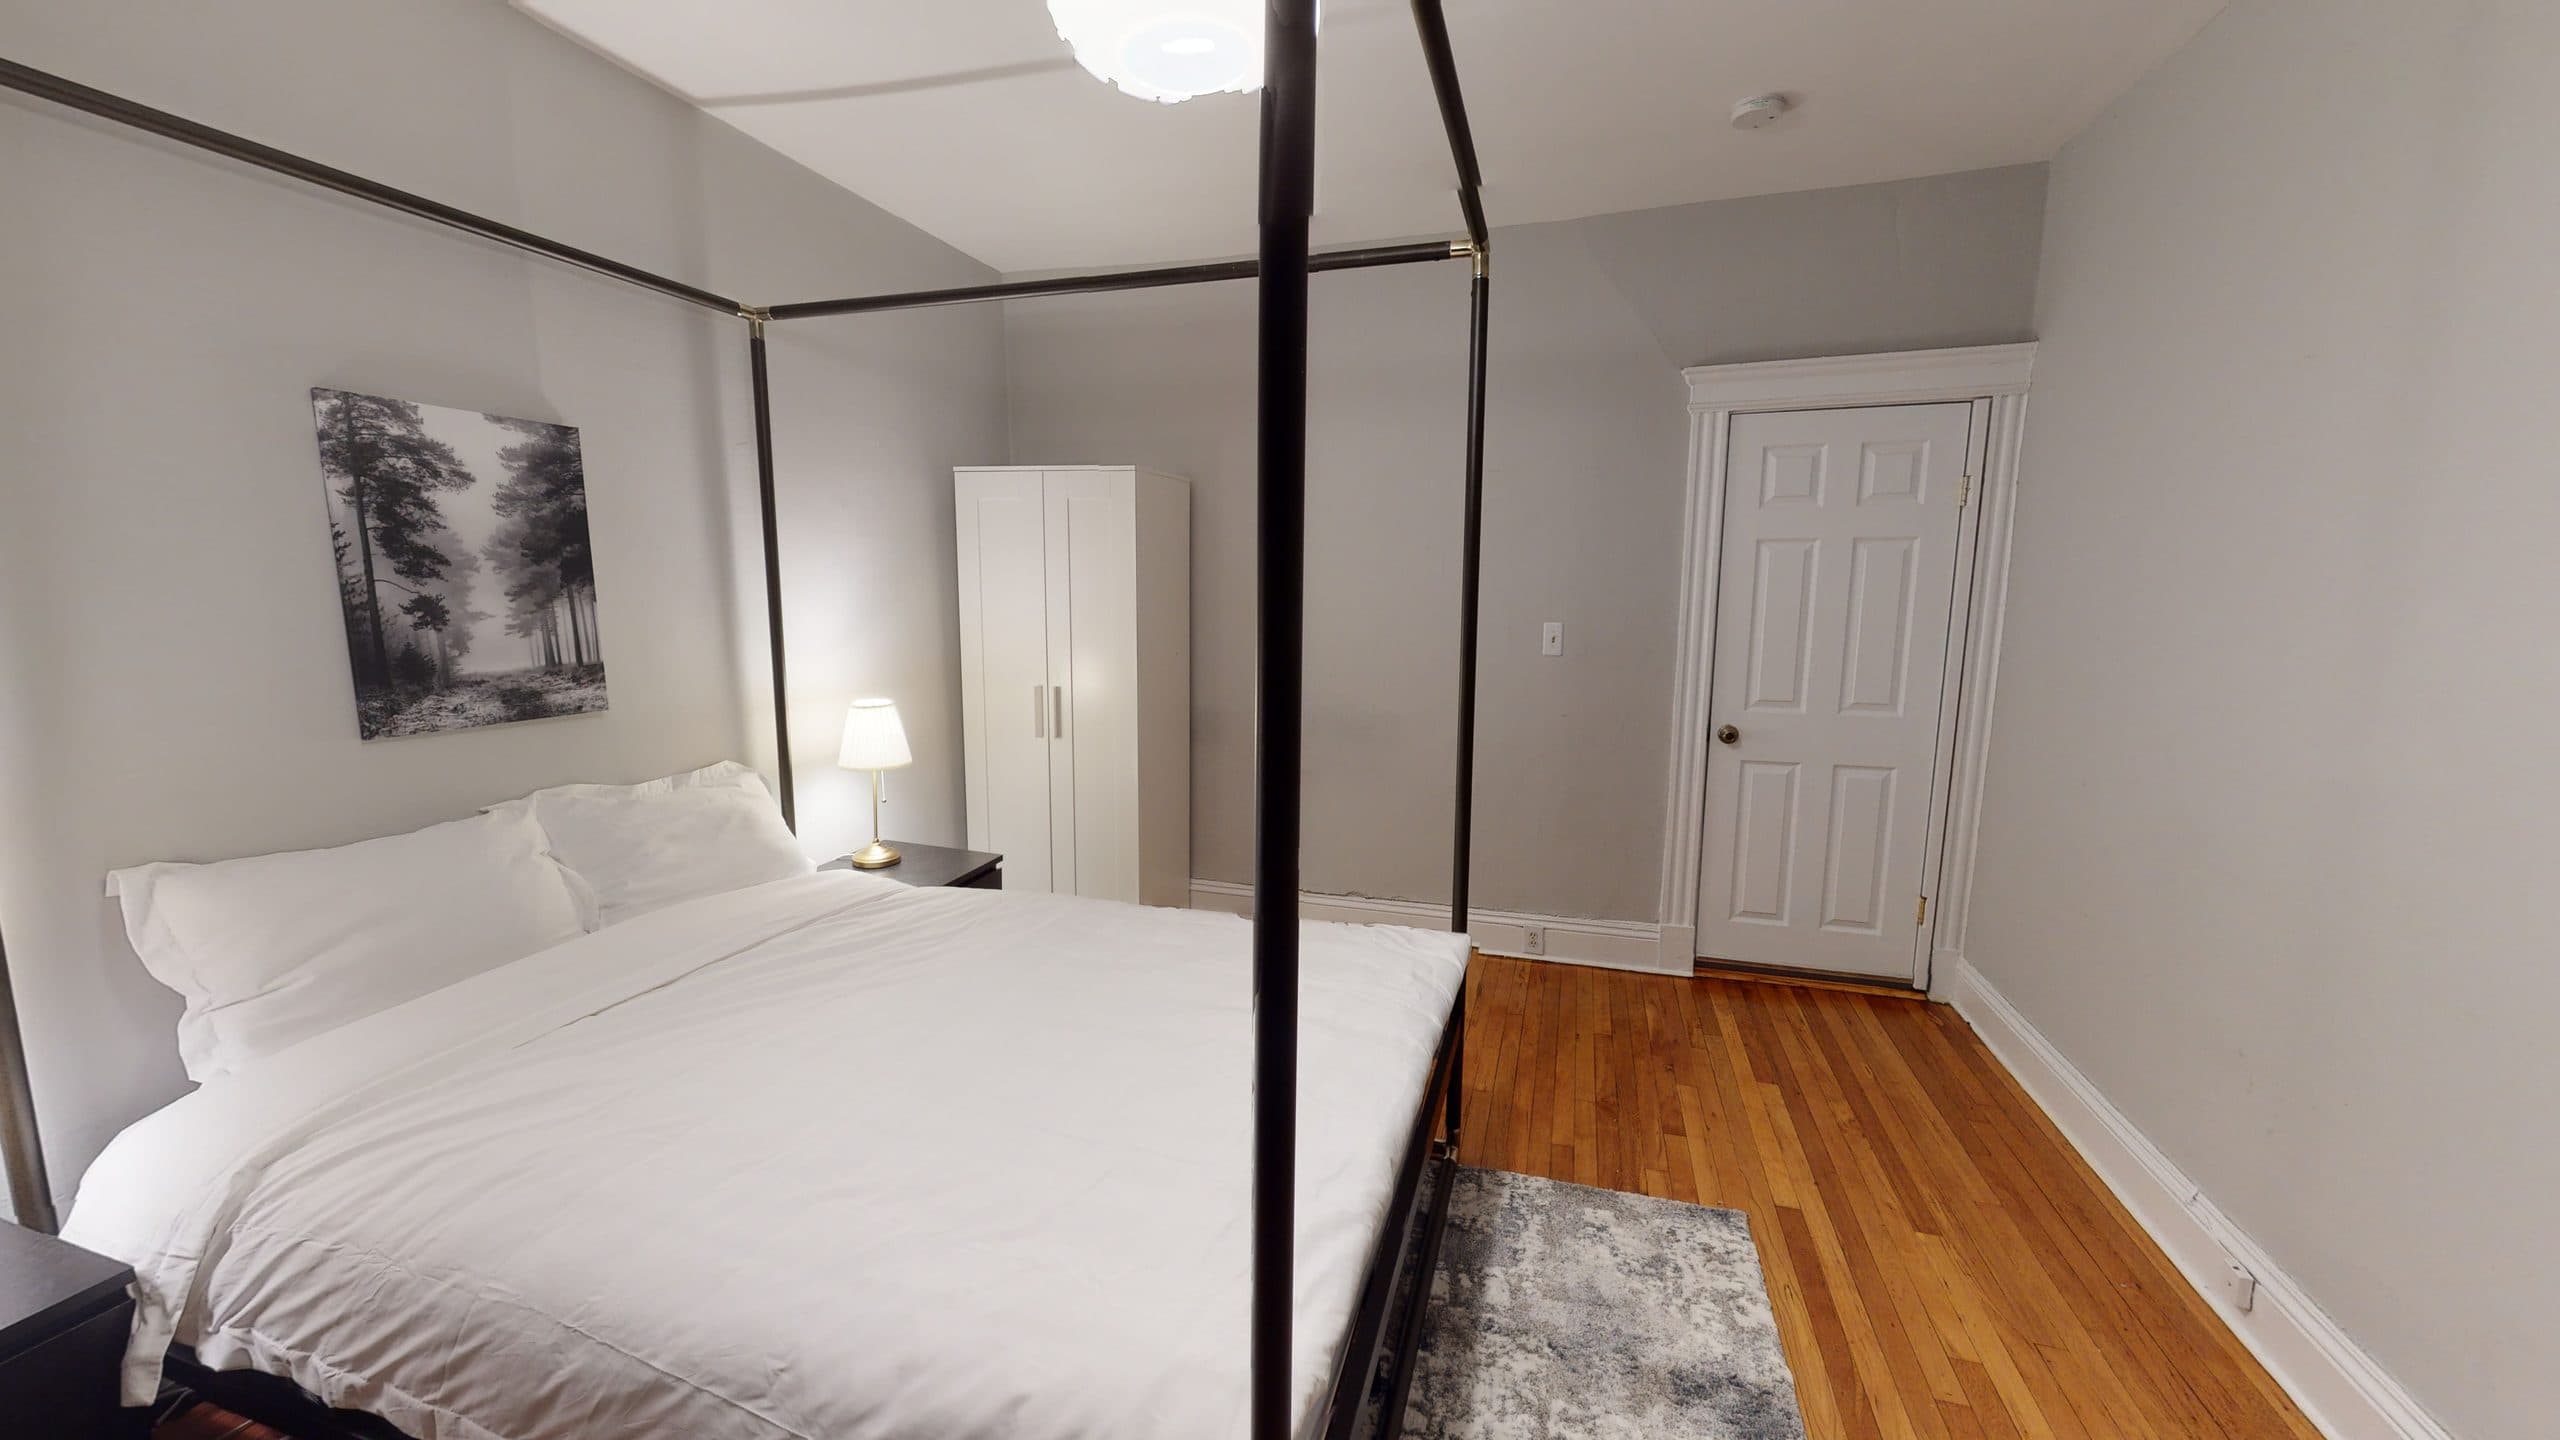 Photo 3 of #1292: Queen Bedroom 4B at June Homes